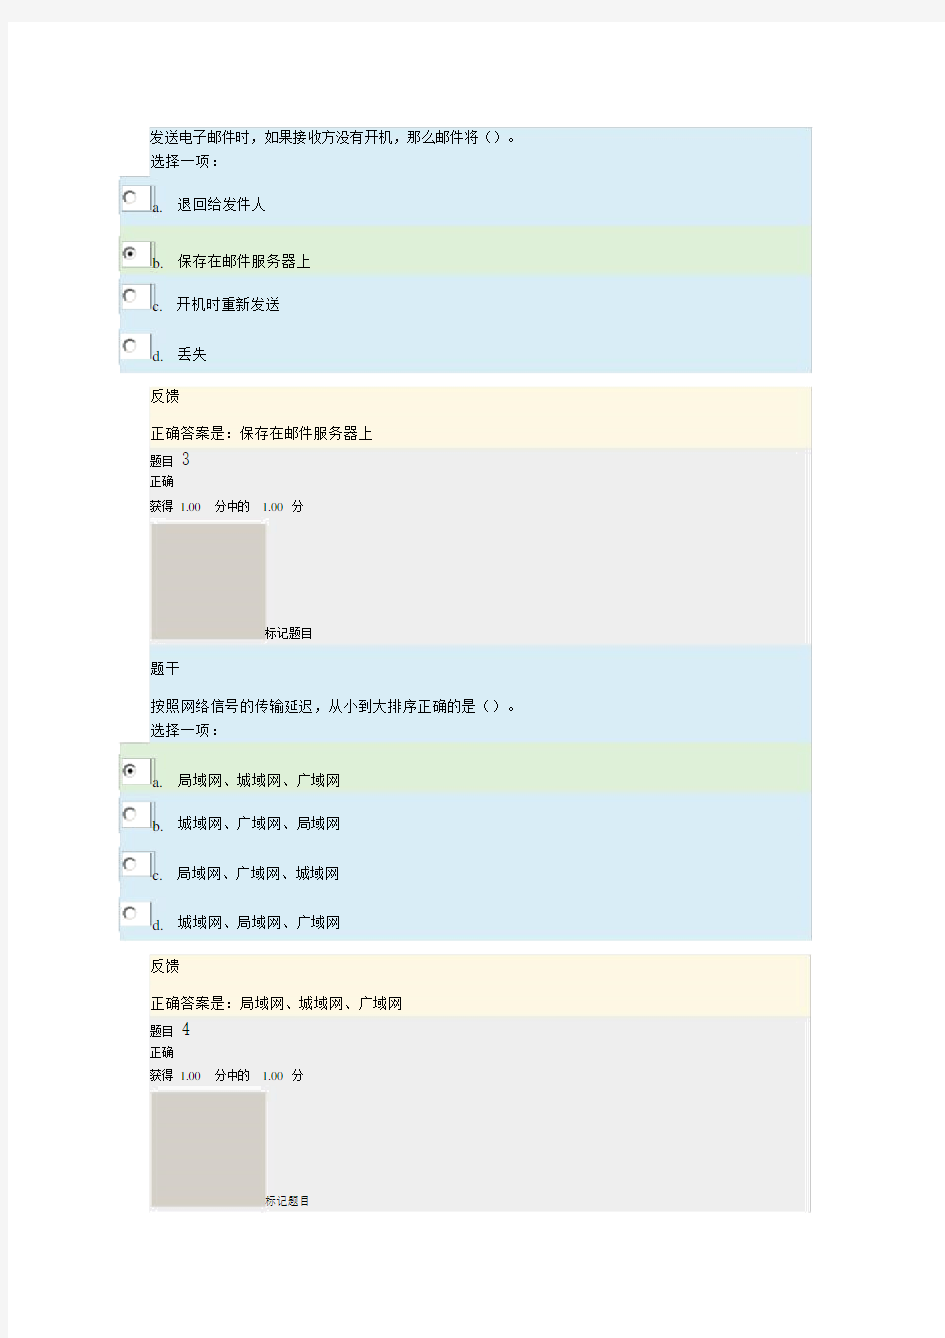 上海交通大学继续教育学院计算机应用基础(二)第四次作业-计算机网络基础-